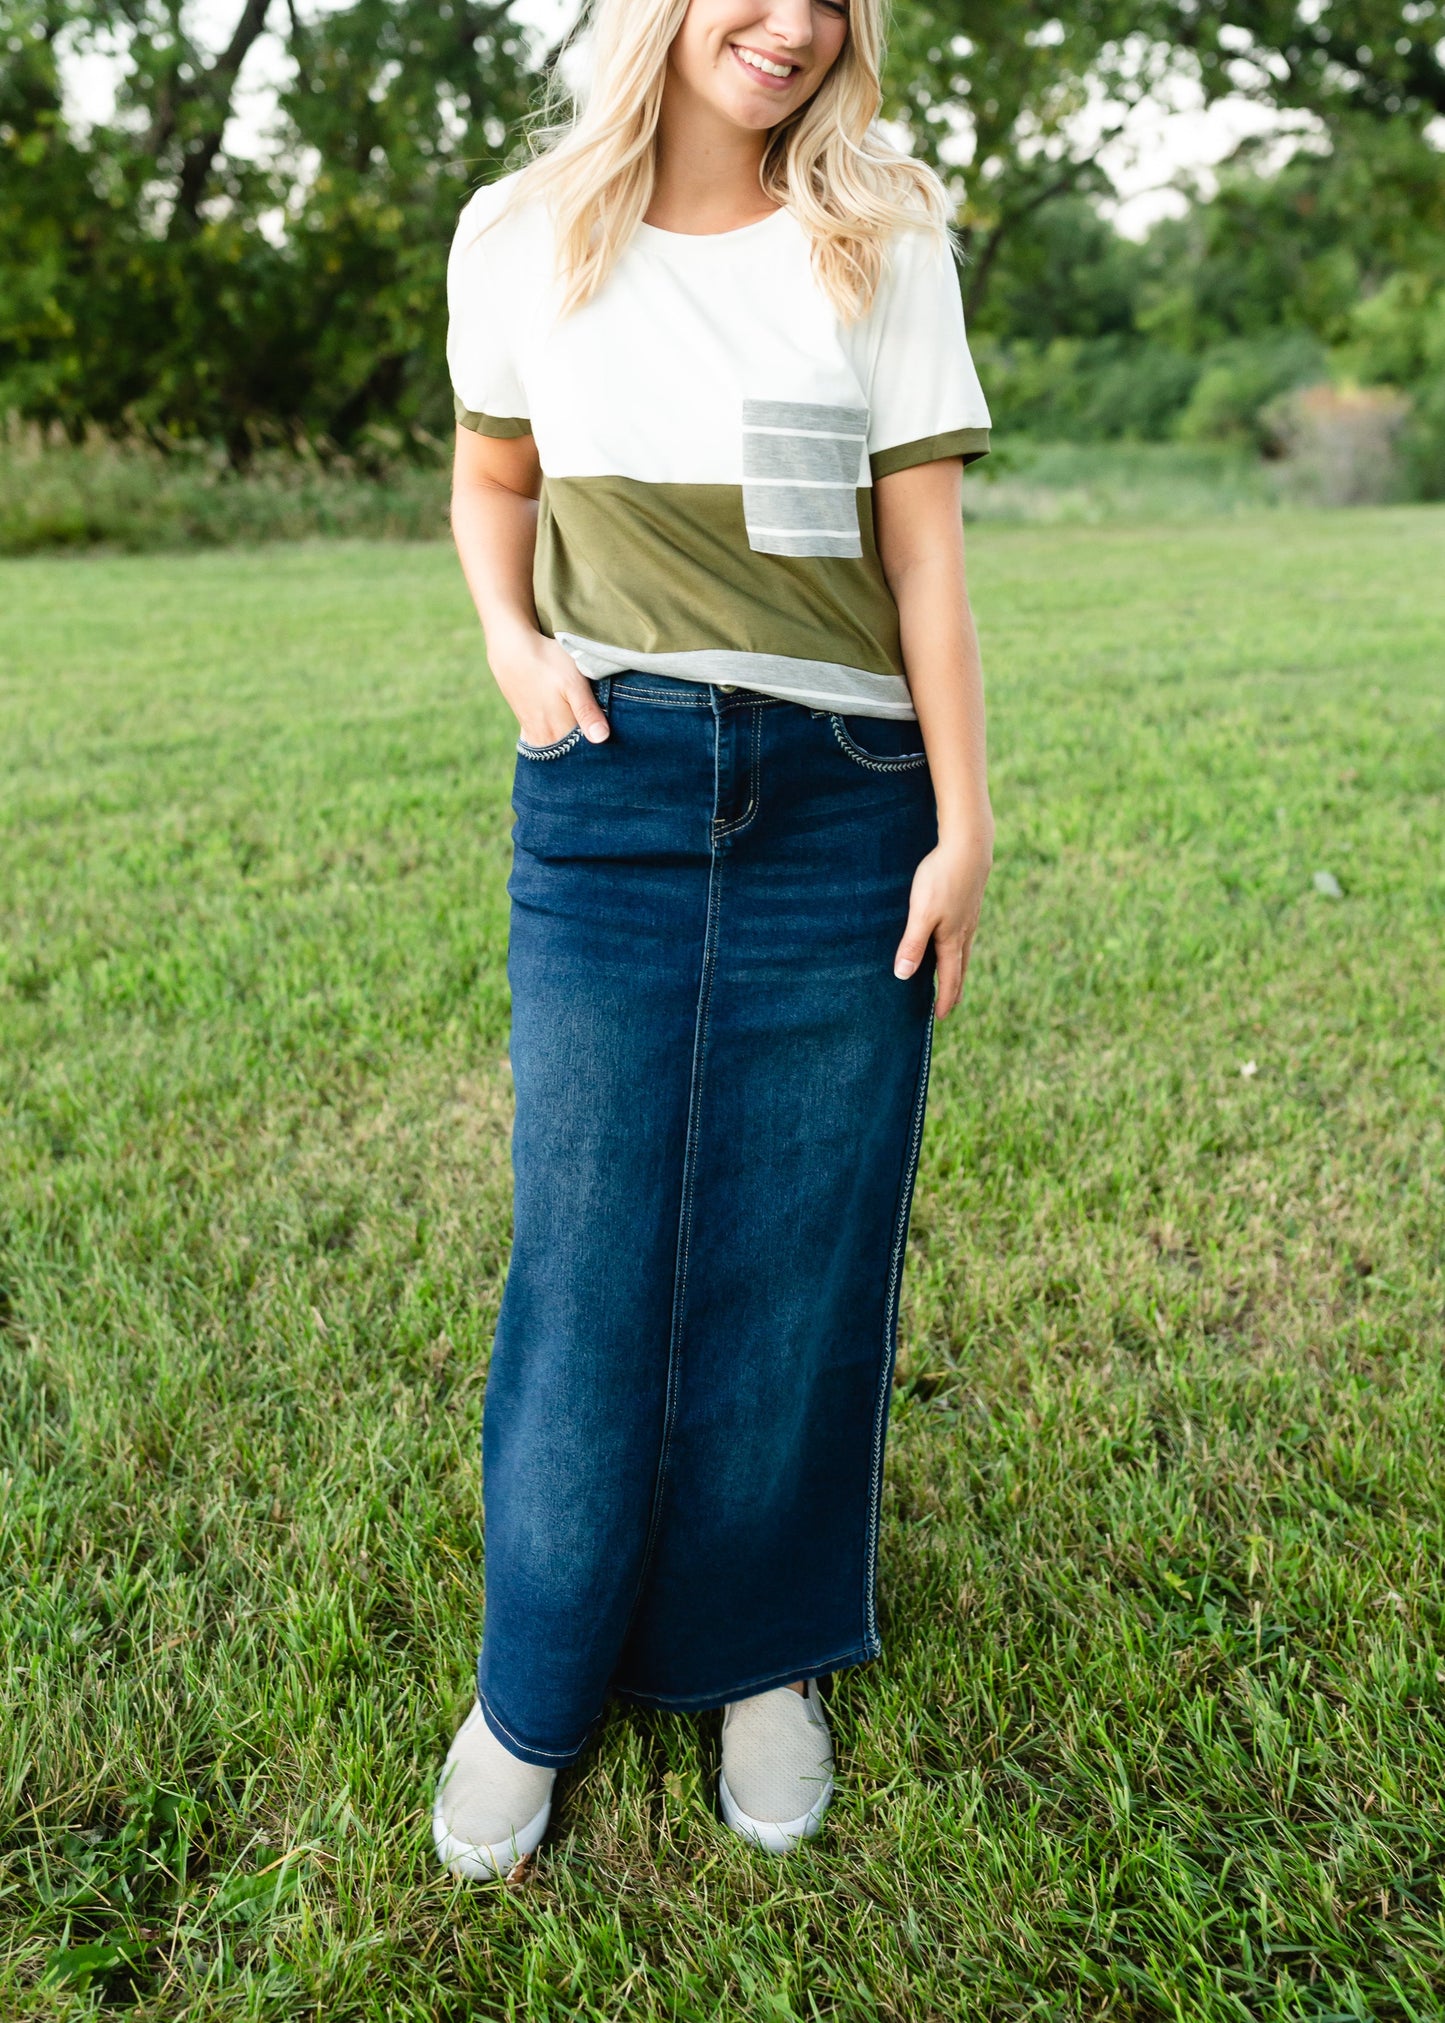 If 3/4 length leggings under denim skirts make a comeback I will be ta